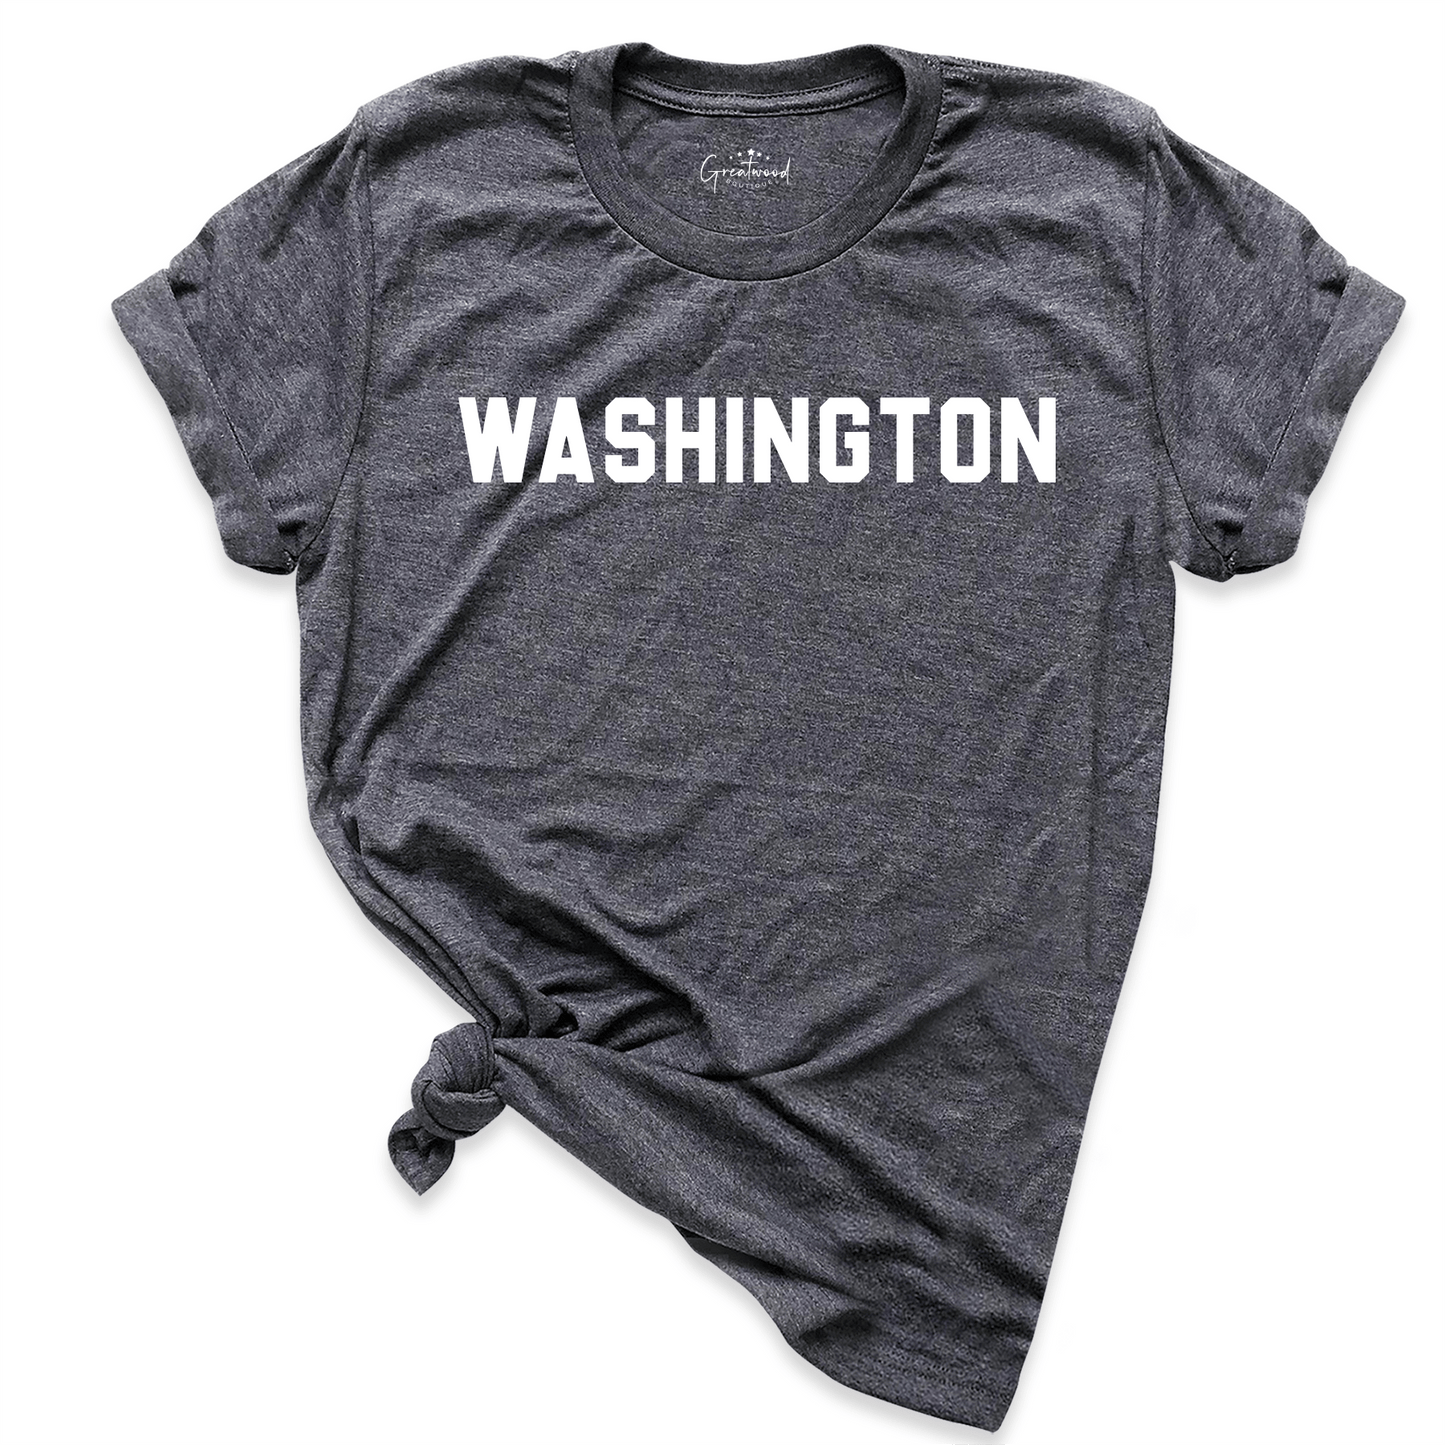 Washington Shirt